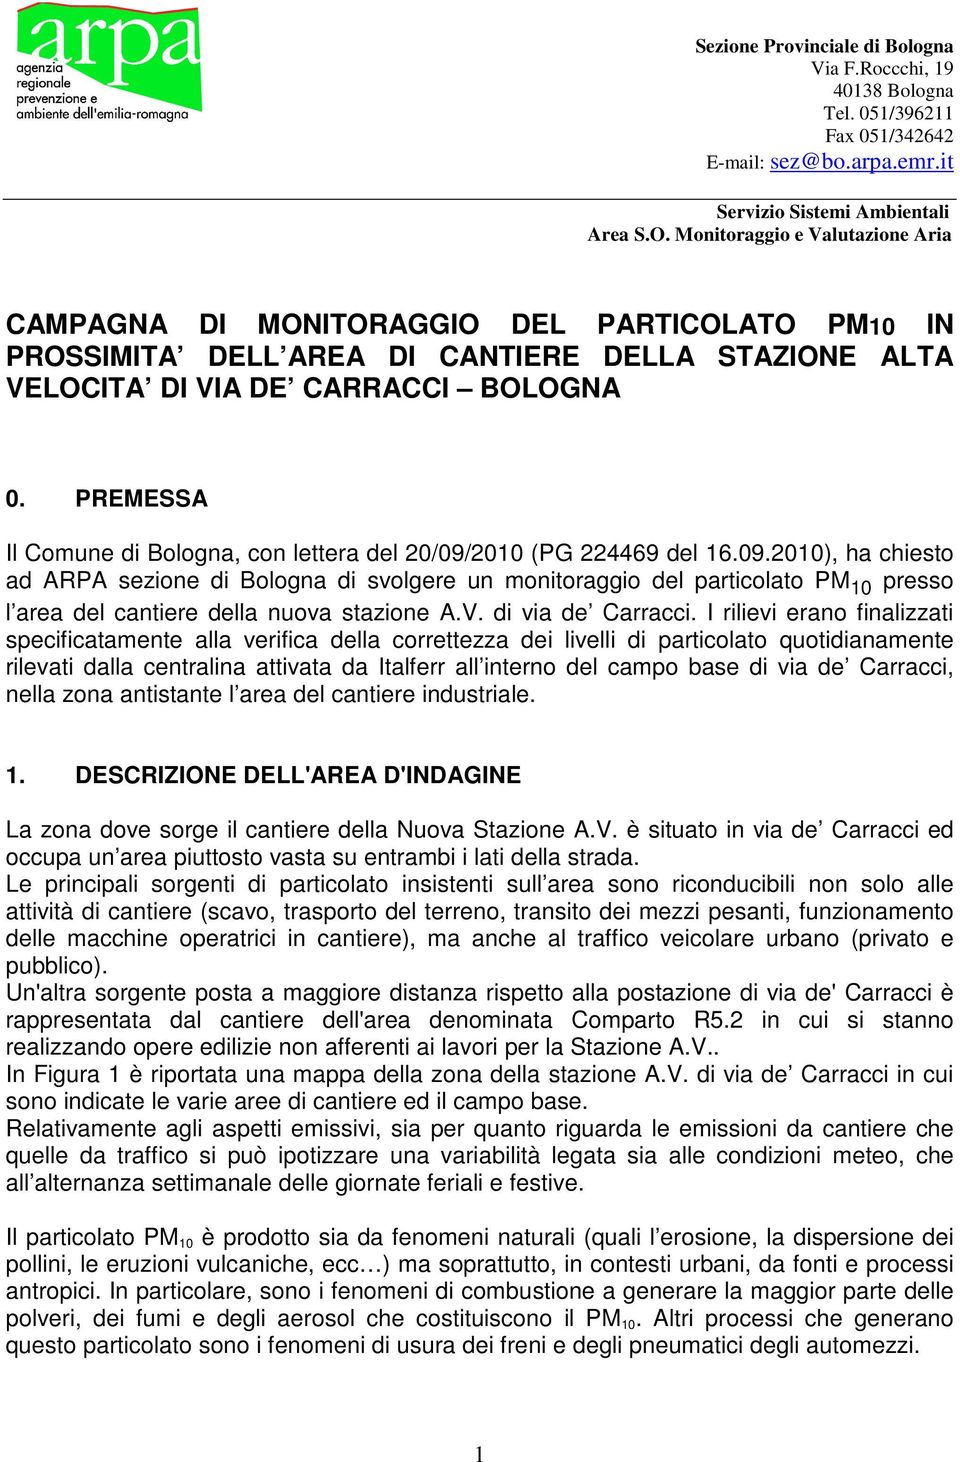 PREMESSA Il Comune di Bologna, con lettera del 20/09/2010 (PG 224469 del 16.09.2010), ha chiesto ad ARPA sezione di Bologna di svolgere un monitoraggio del particolato PM 10 presso l area del cantiere della nuova stazione A.